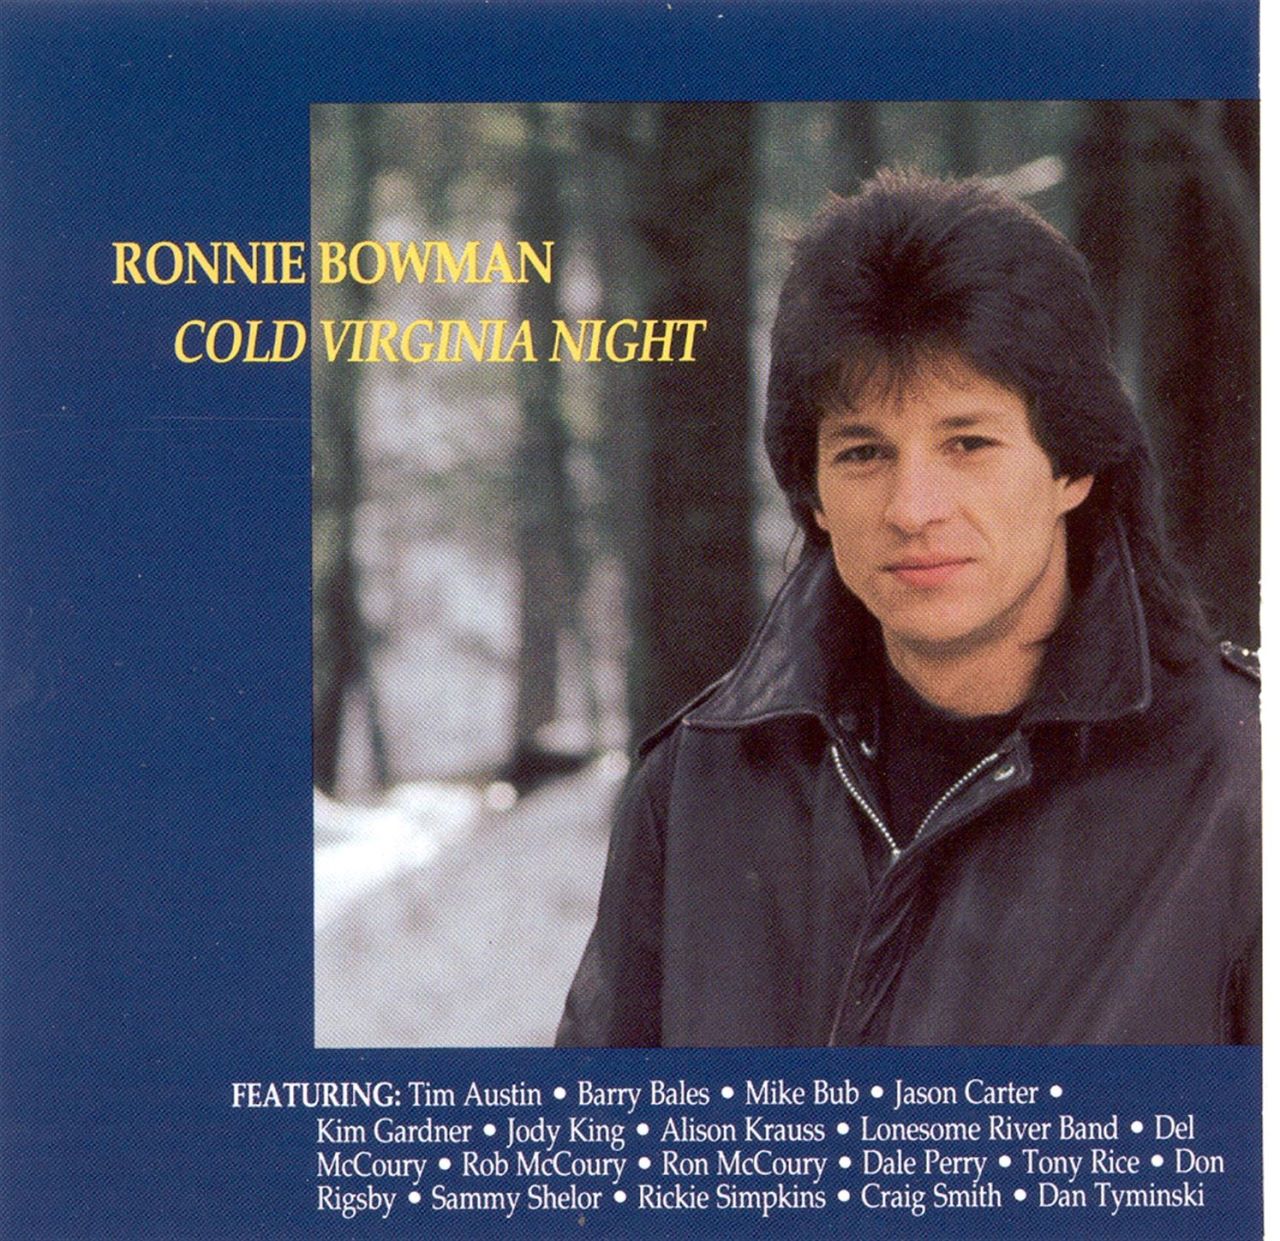 Ronnie Bowman - Cold Virginia Night cover album